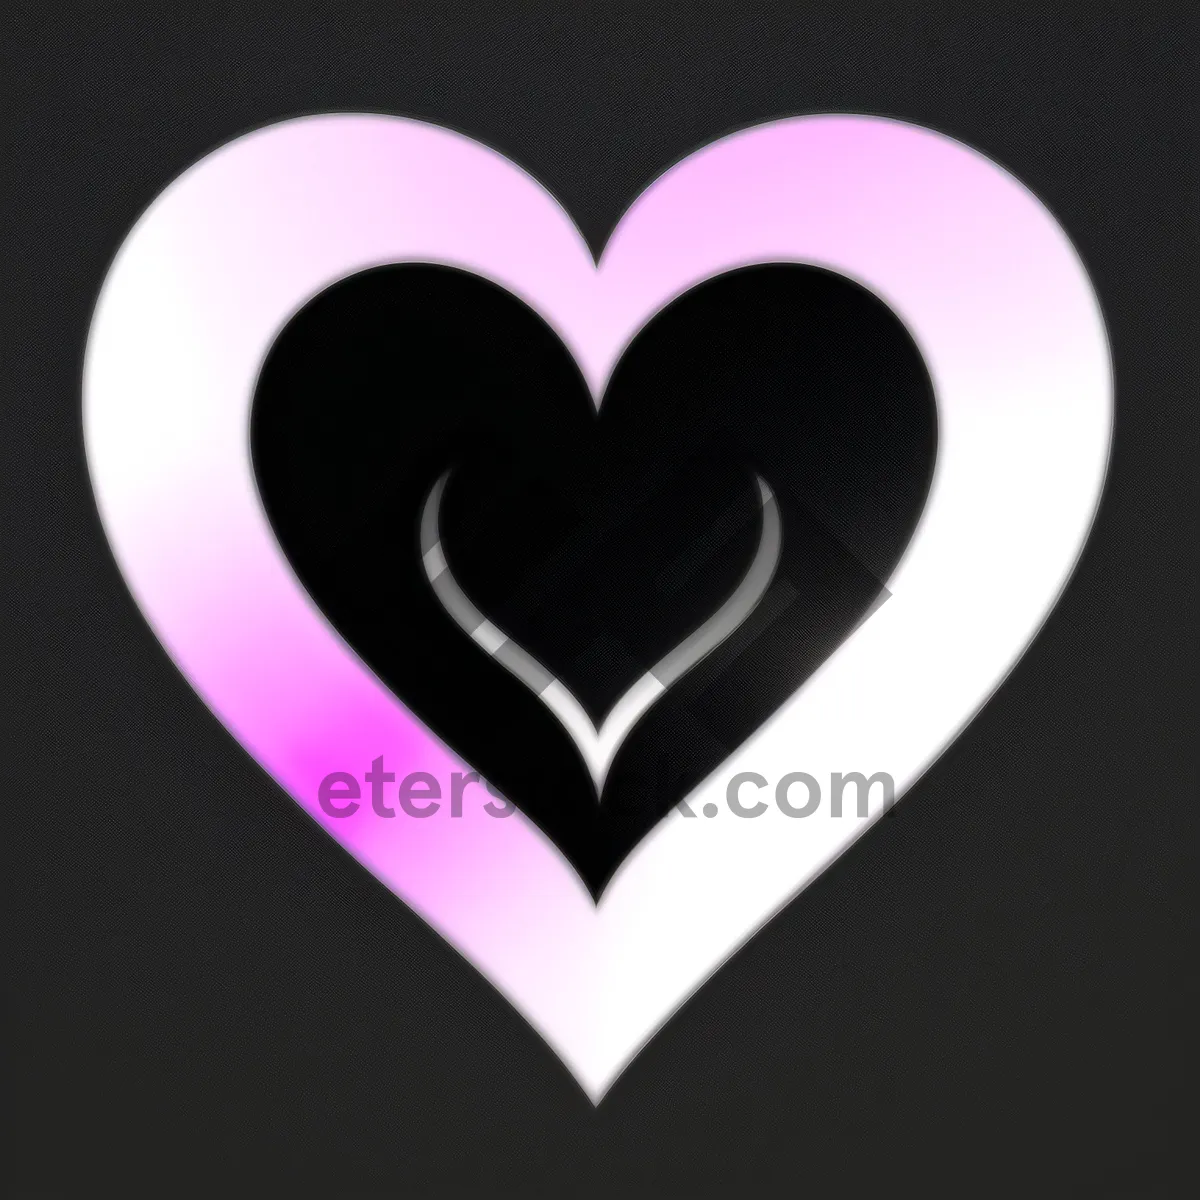 Picture of Romantic Valentine's Day Love Hearts Icon